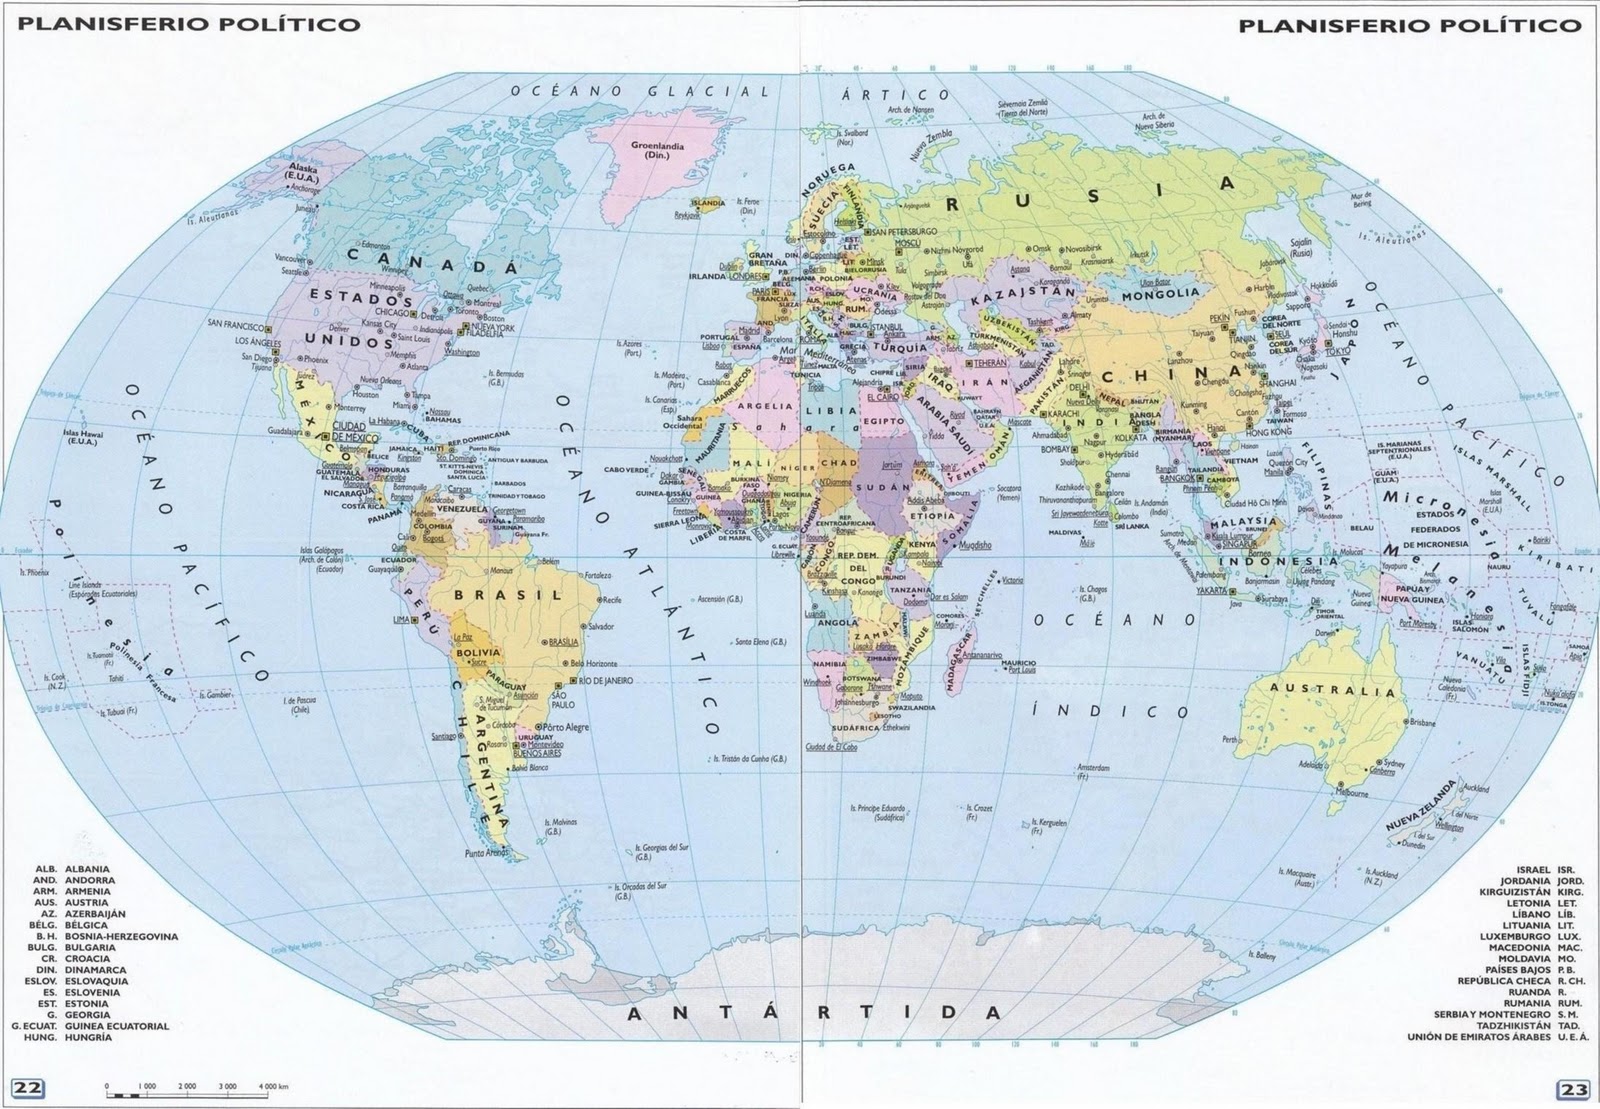 Imagenes de nombres de los paises en un mapa planisferio - Imagui